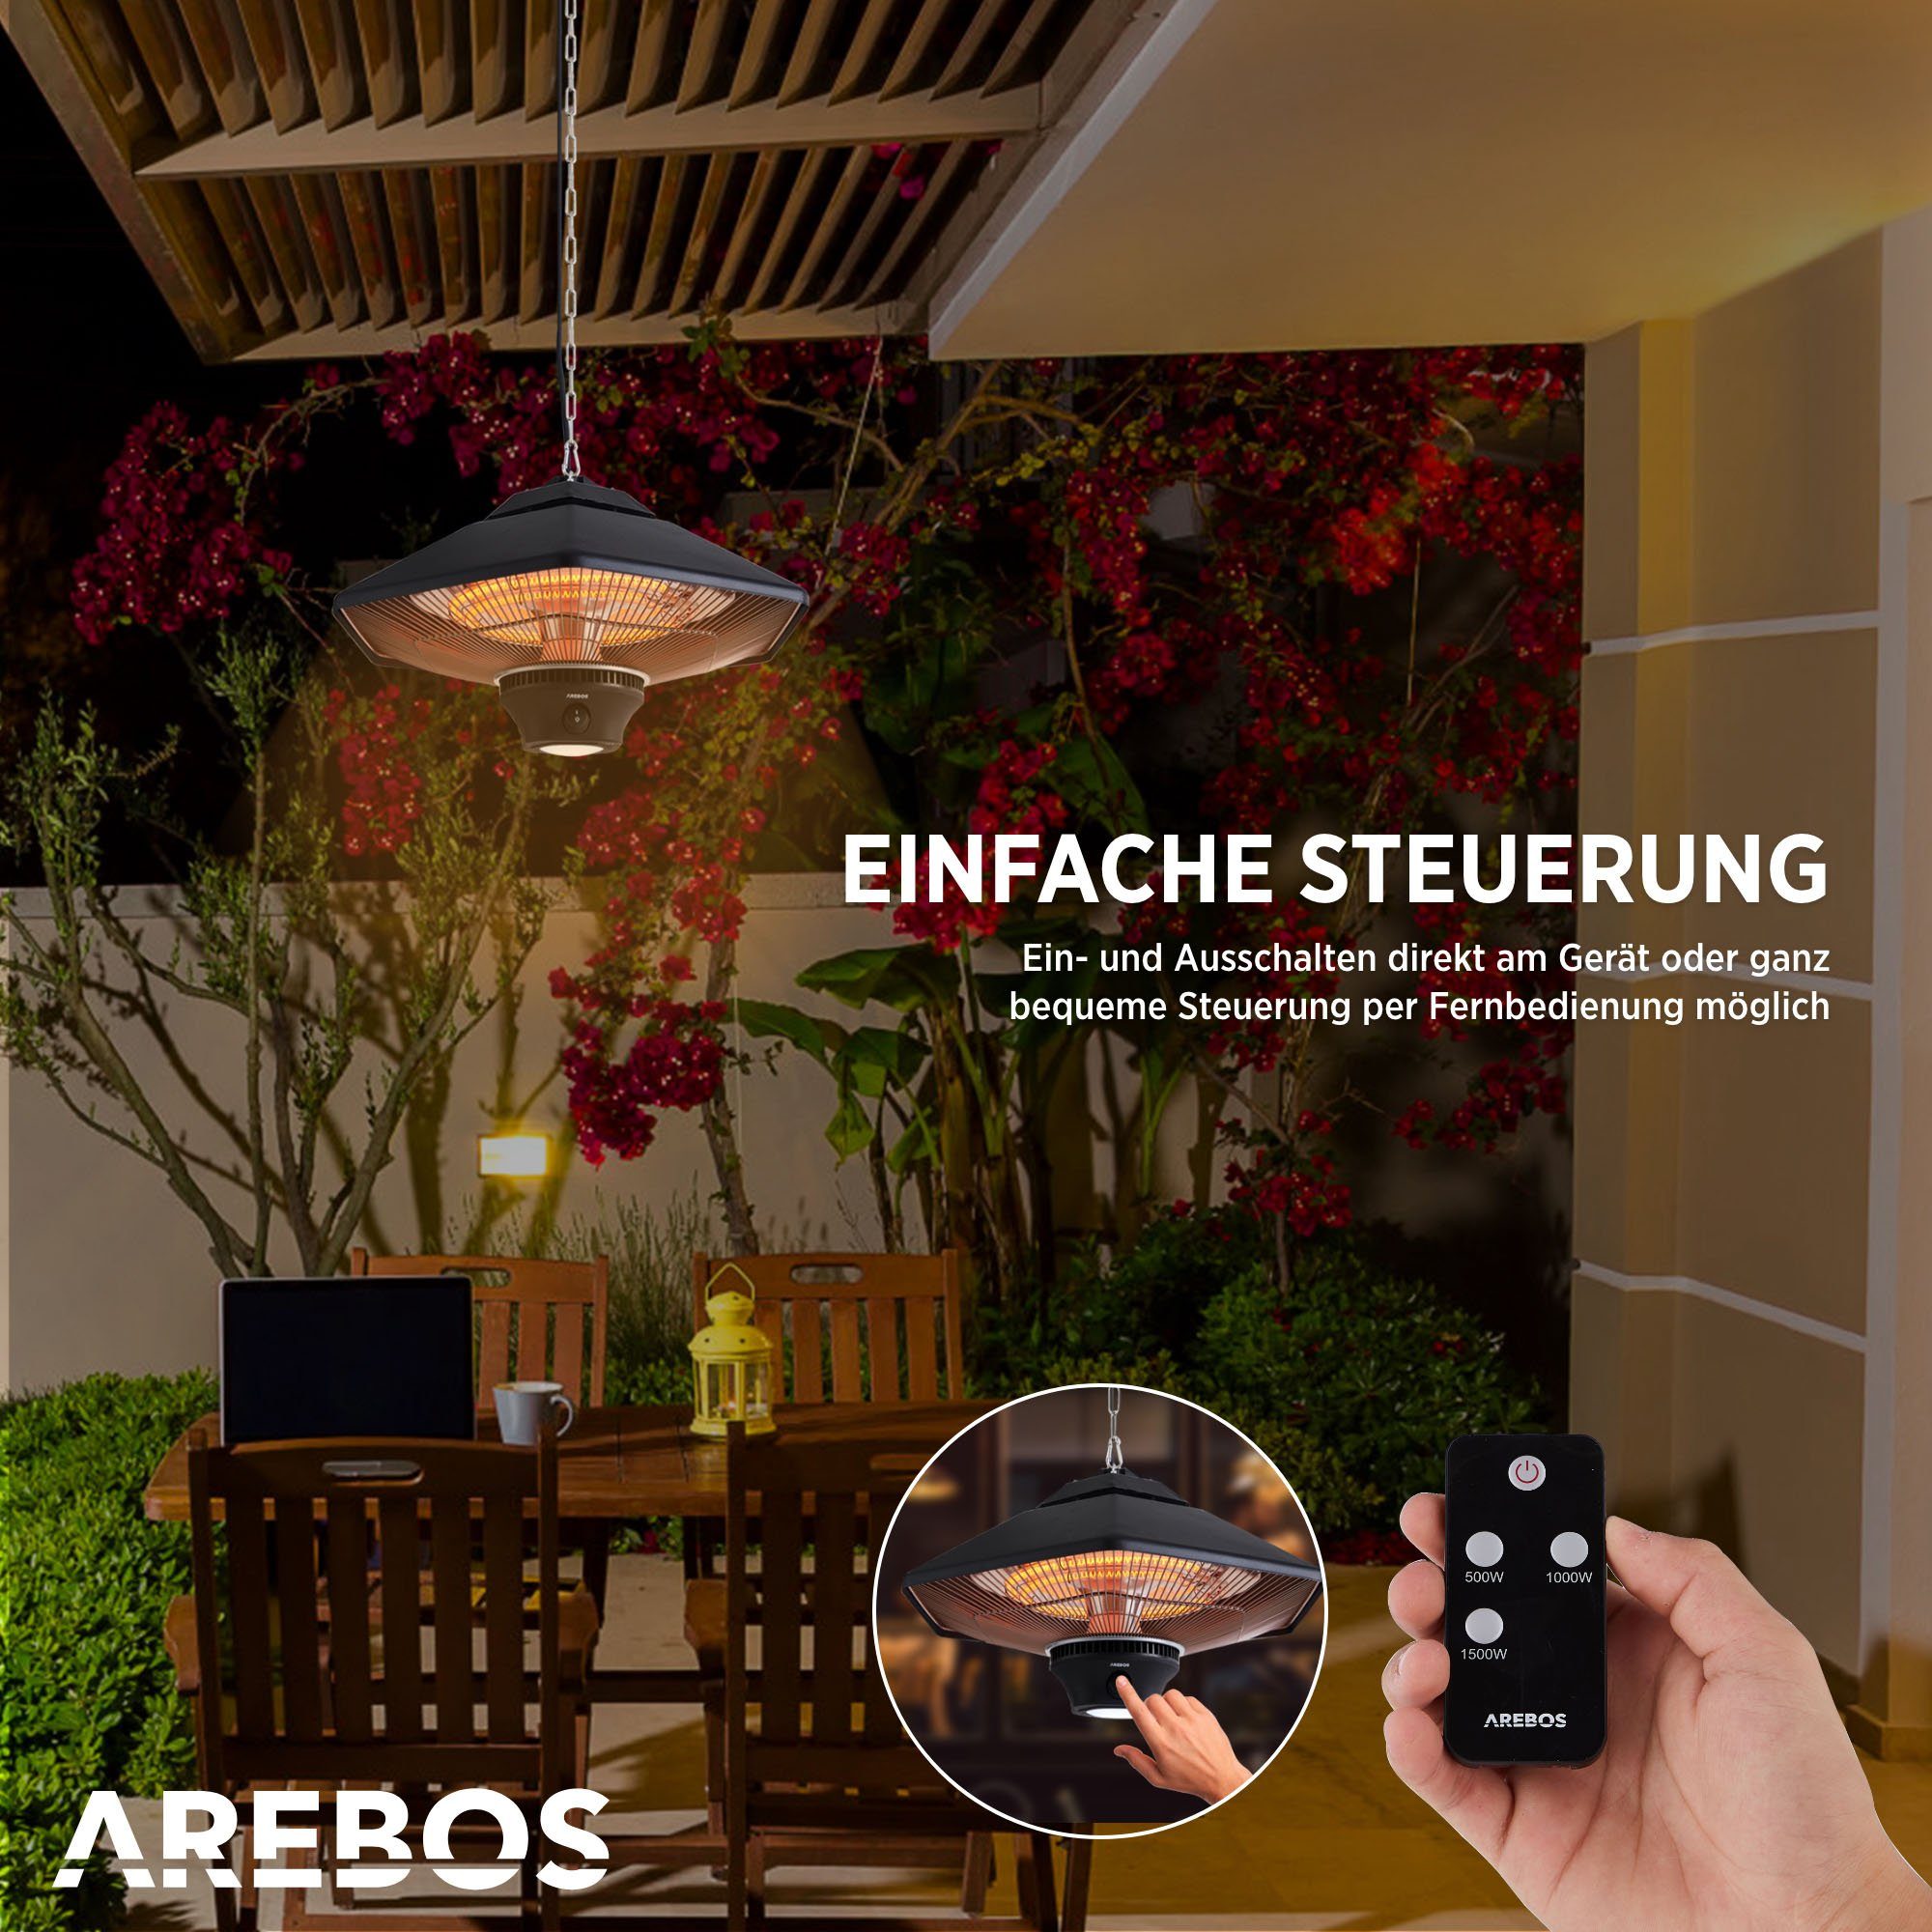 Arebos Terrassenstrahler Deckenheizstrahler Fernbedienung, W Heizstufen, + zuschaltbare 3 2000 Beleuchtung, LED 2 Halogenlampen